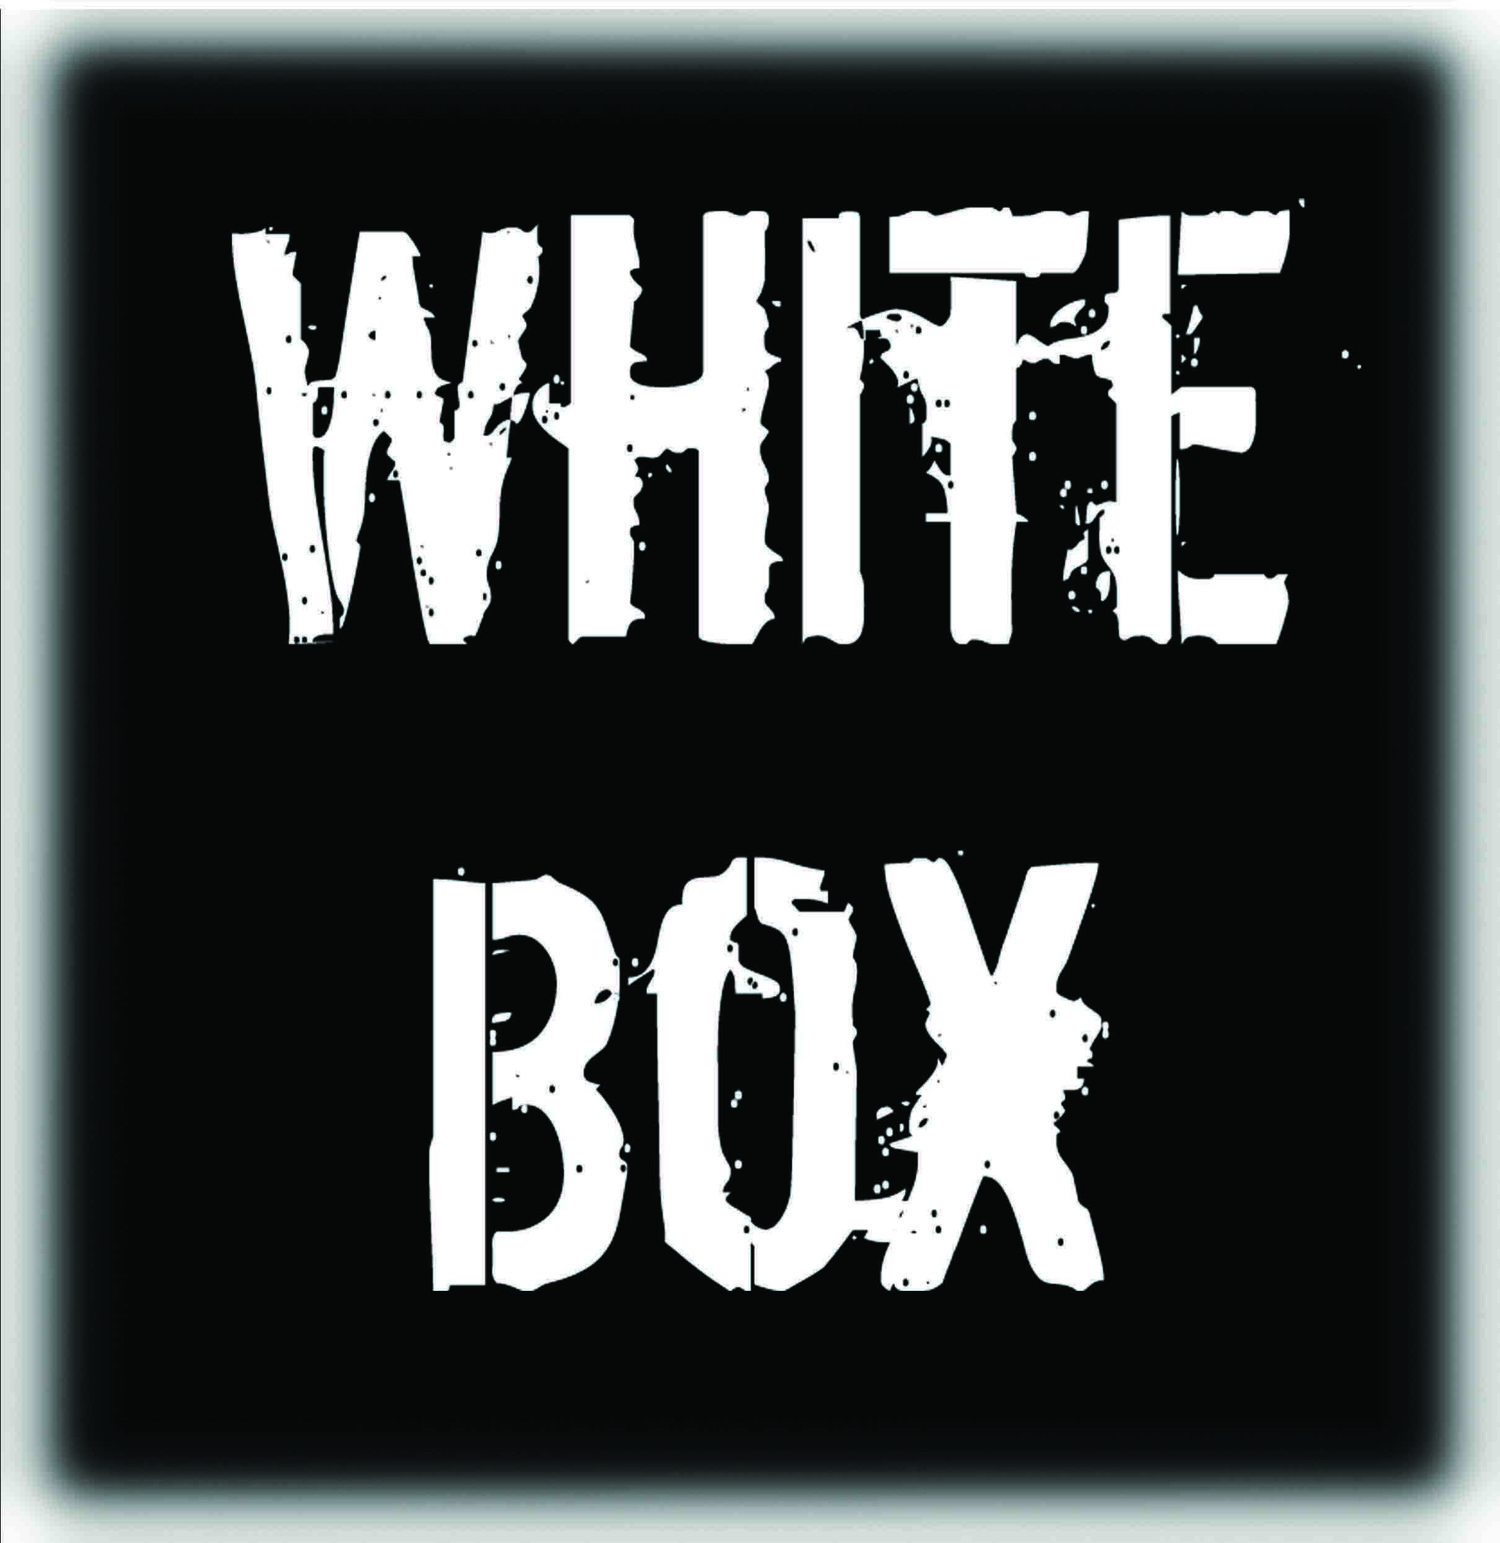 White Box Theatre